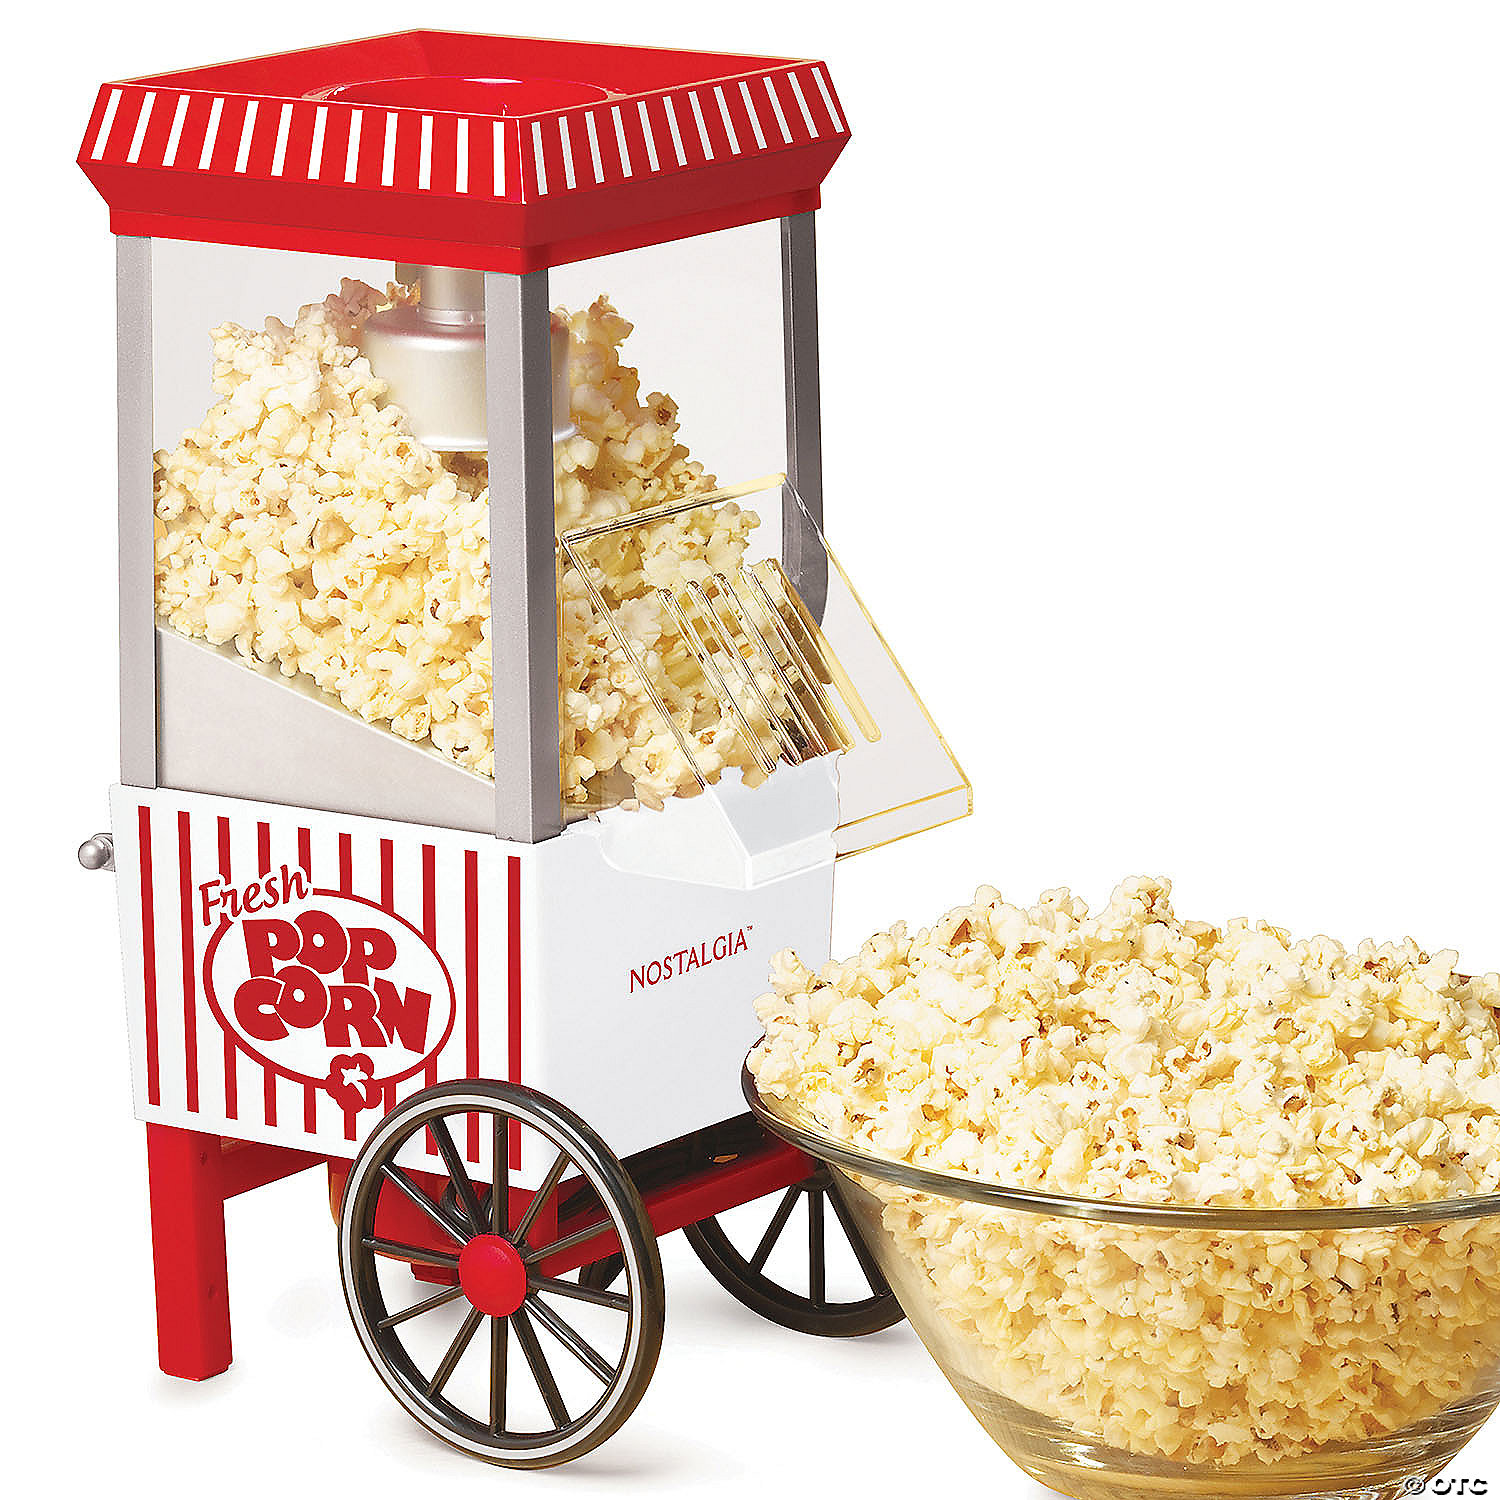 Observation Vant til nødvendighed Nostalgia 12-Cup Tabletop Hot Air Popcorn Maker